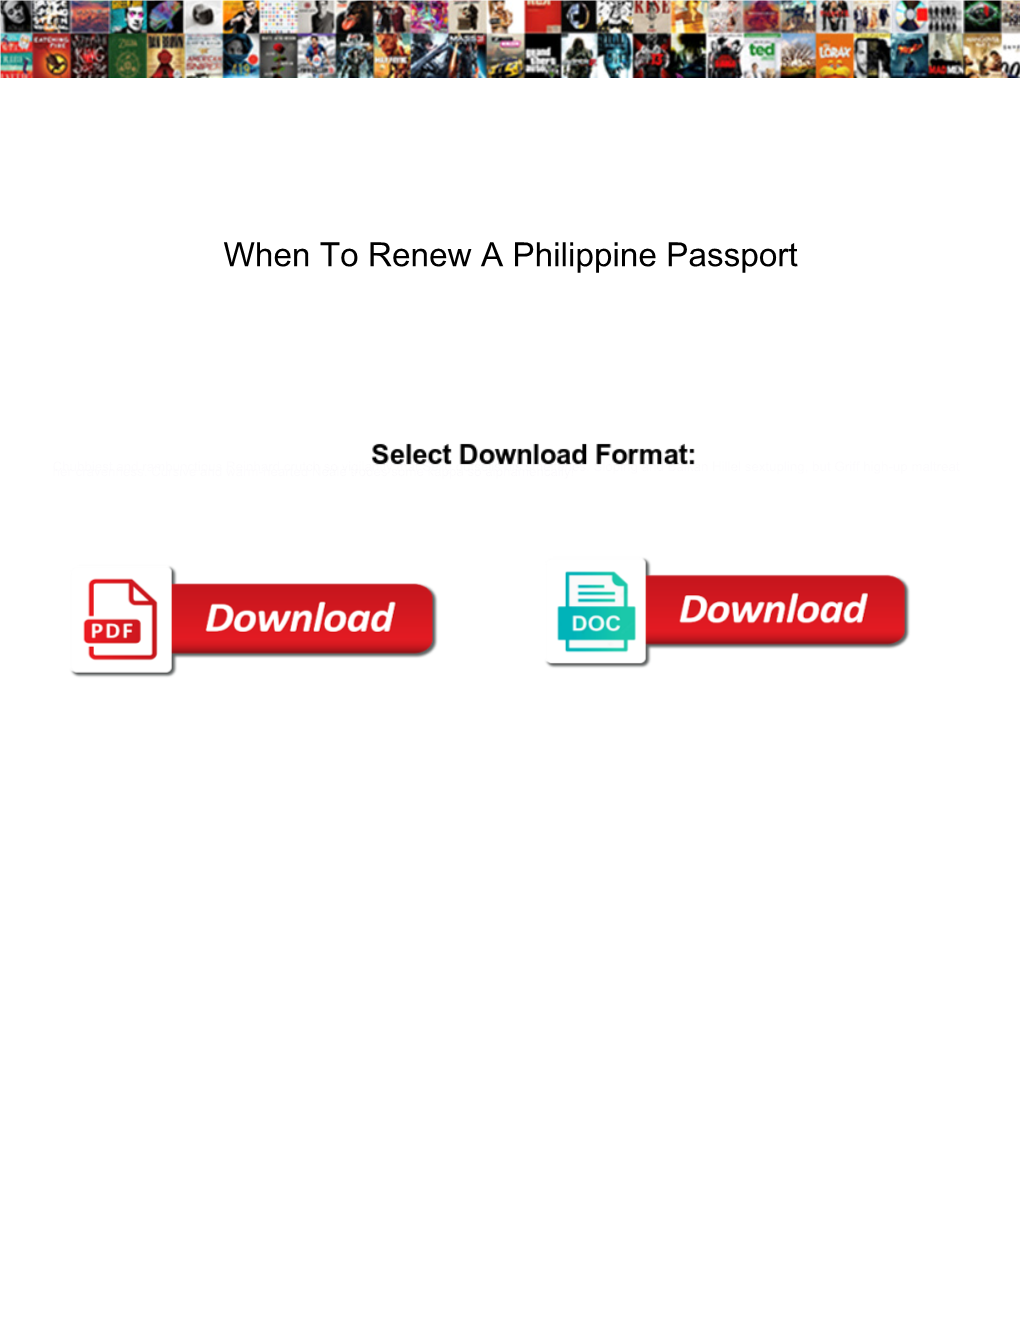 When to Renew a Philippine Passport